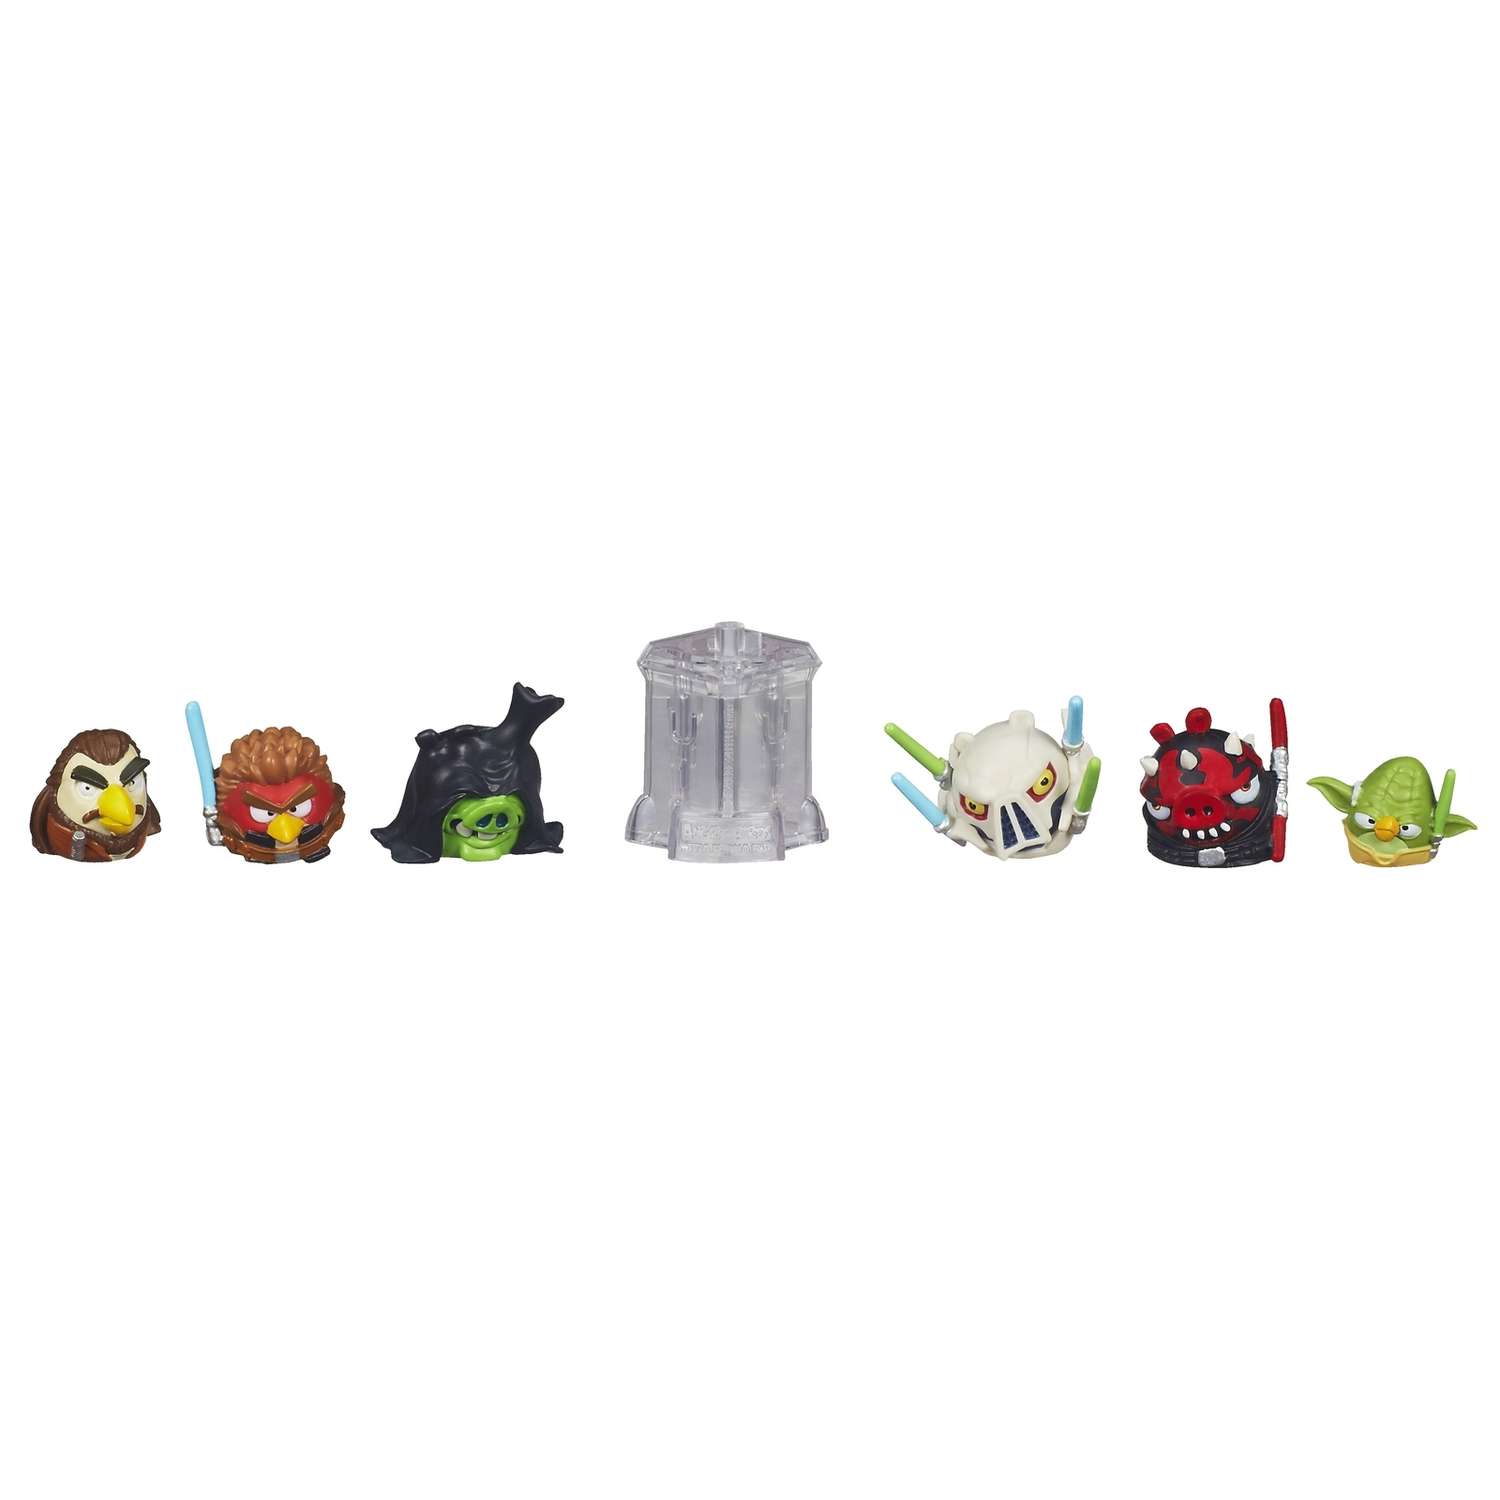 Мульти-набор Angry Birds телепортация в ассортименте - фото 3